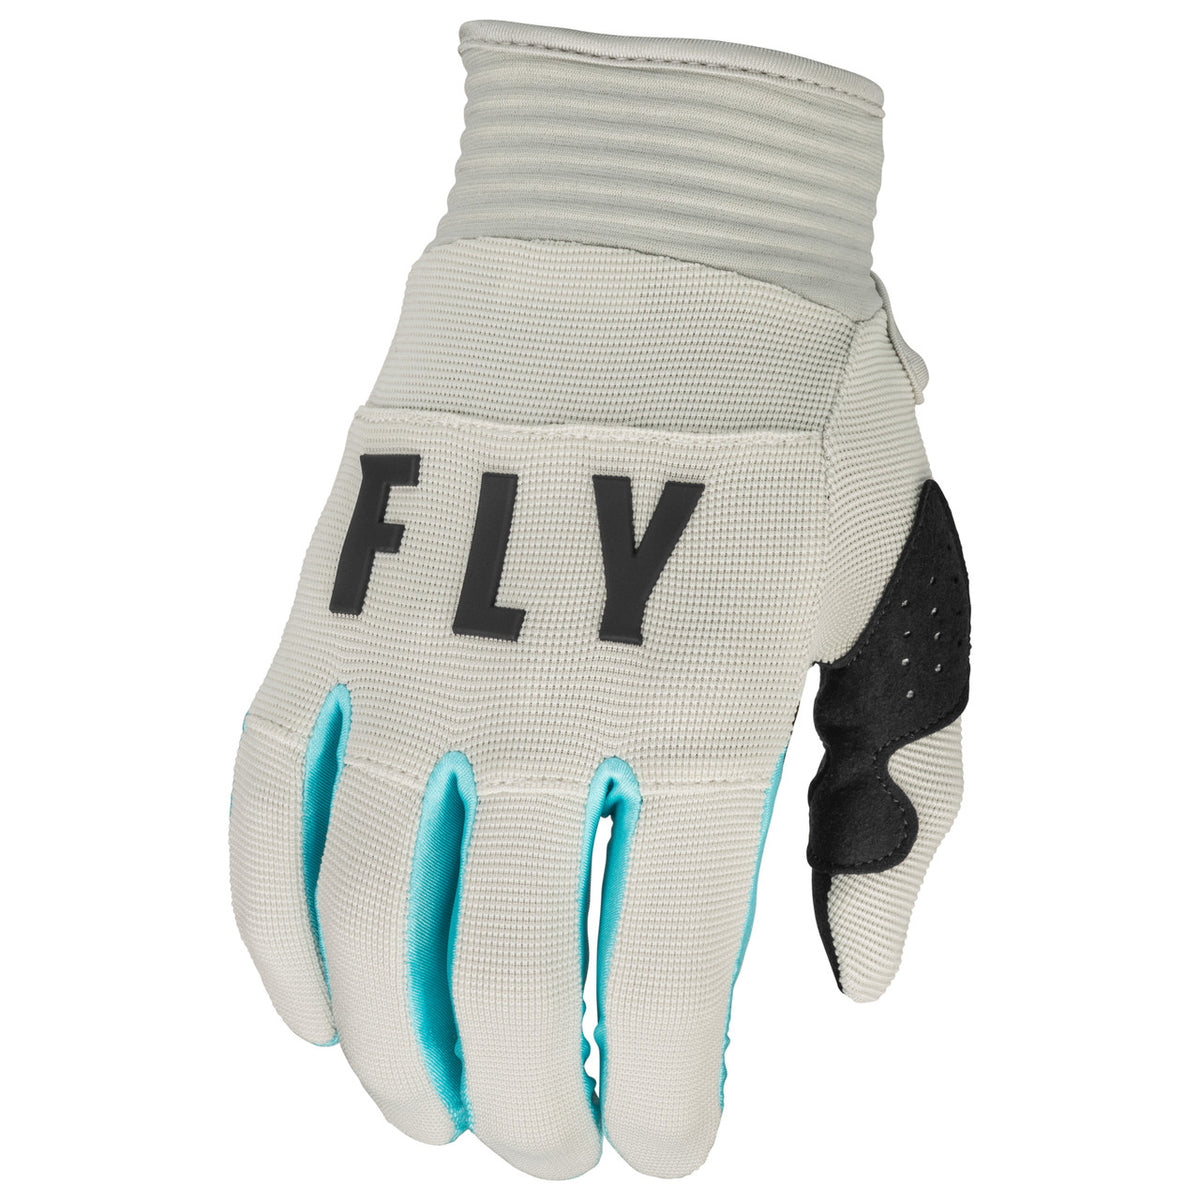 Fly F-16 Youth Gloves (Light Grey/Sky Blue)